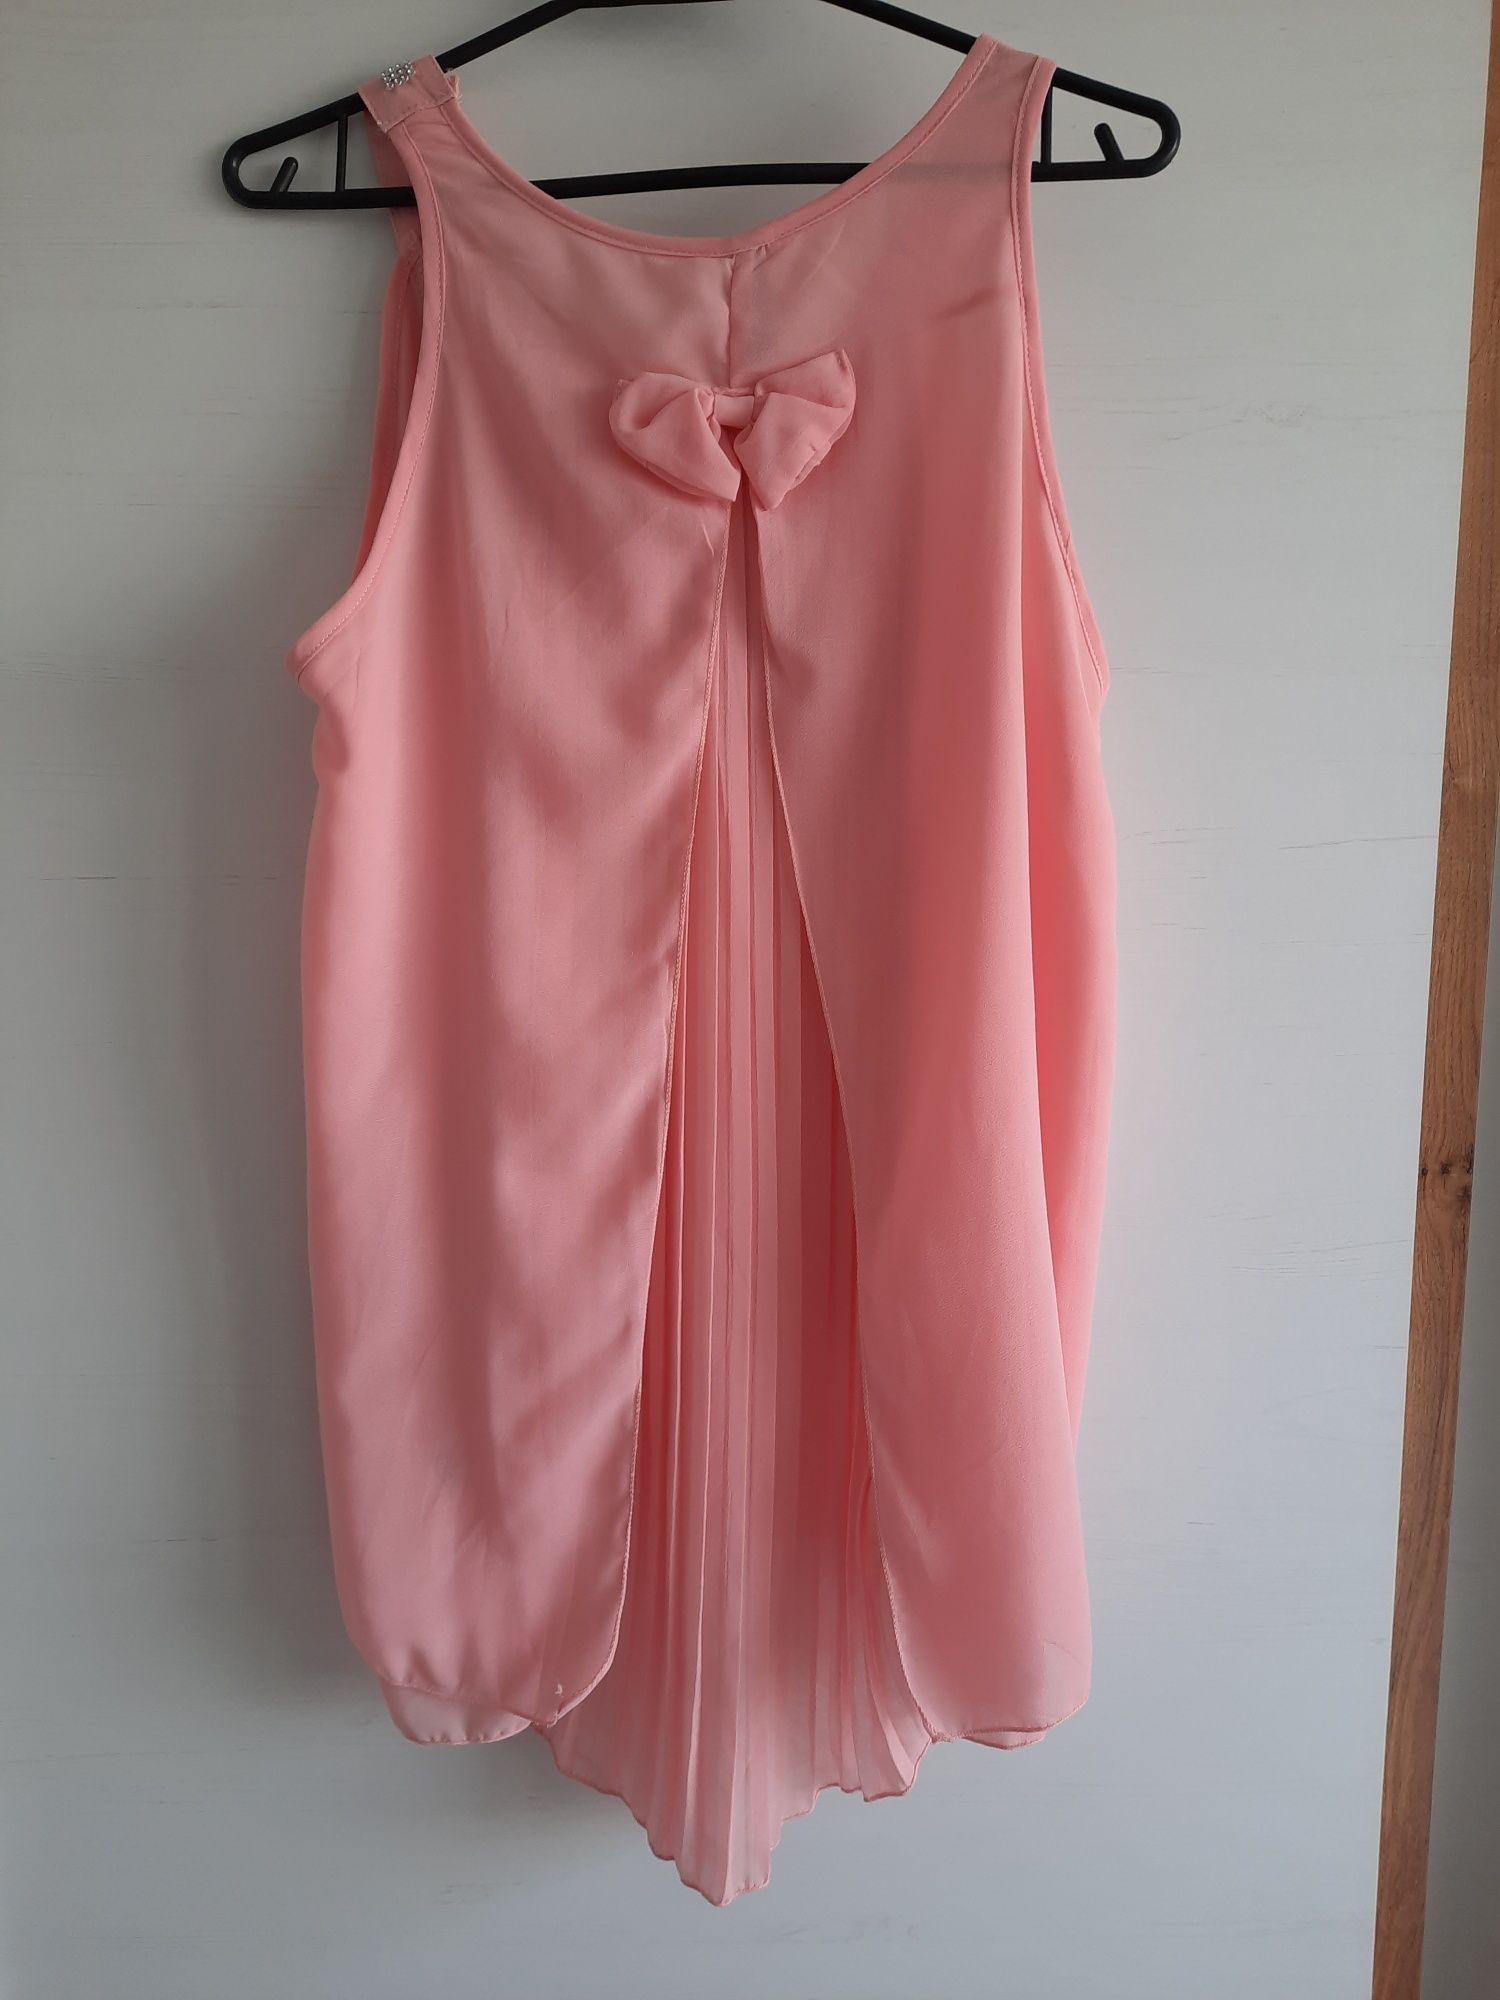 Nowa bluzka różowa cekiny plisy M 38